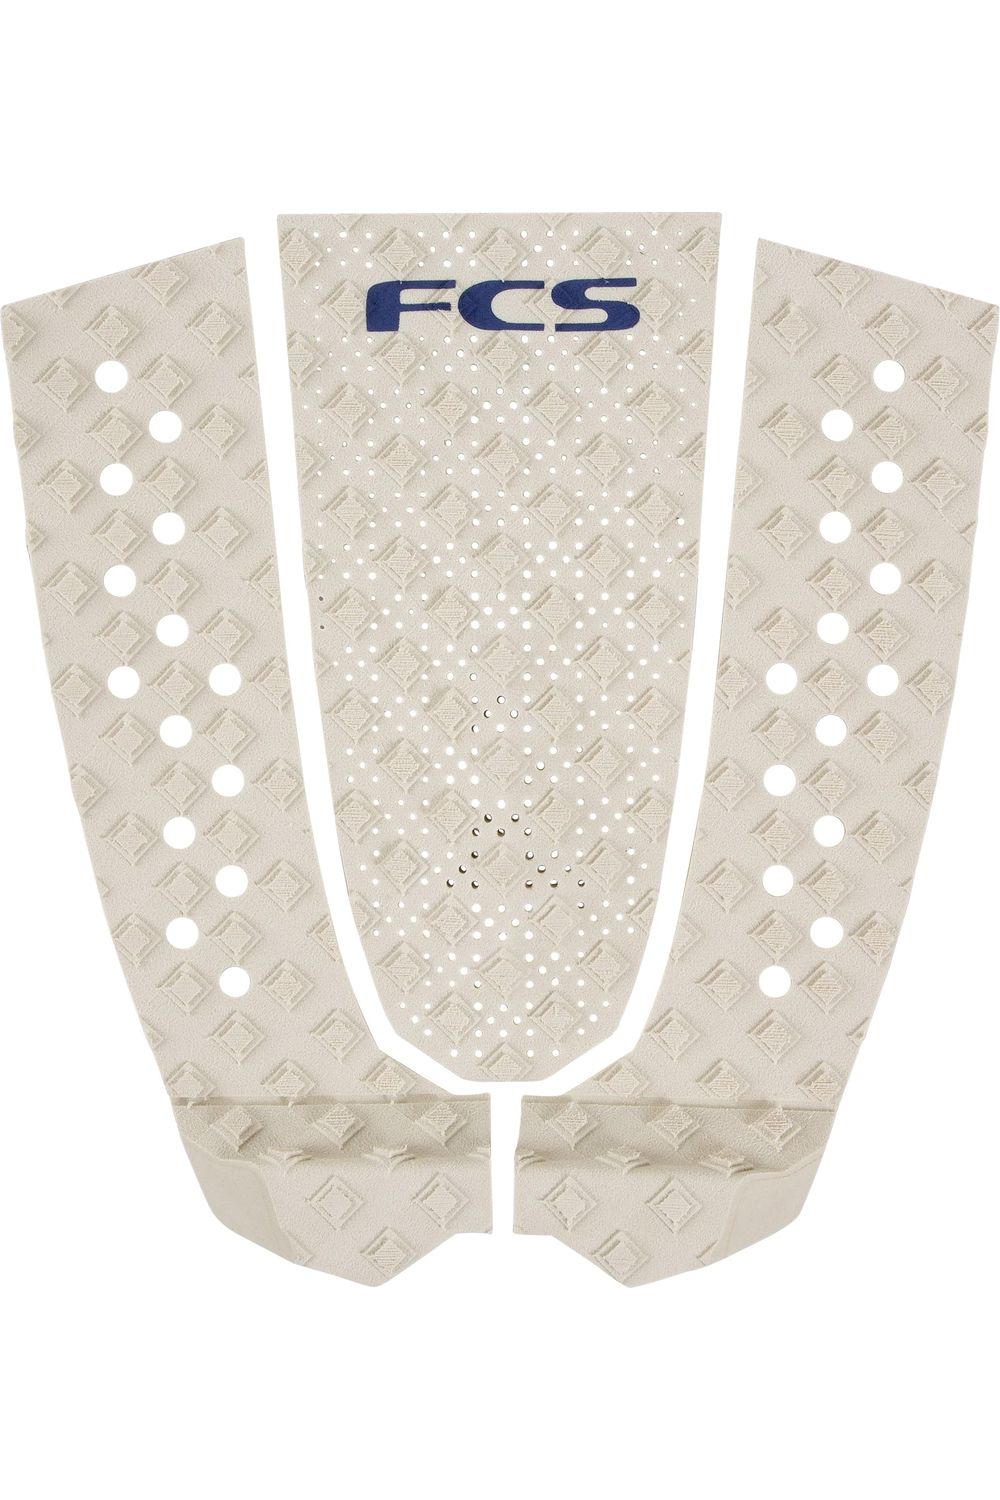 FCS T-3 Eco Warm Grey Tail Pad